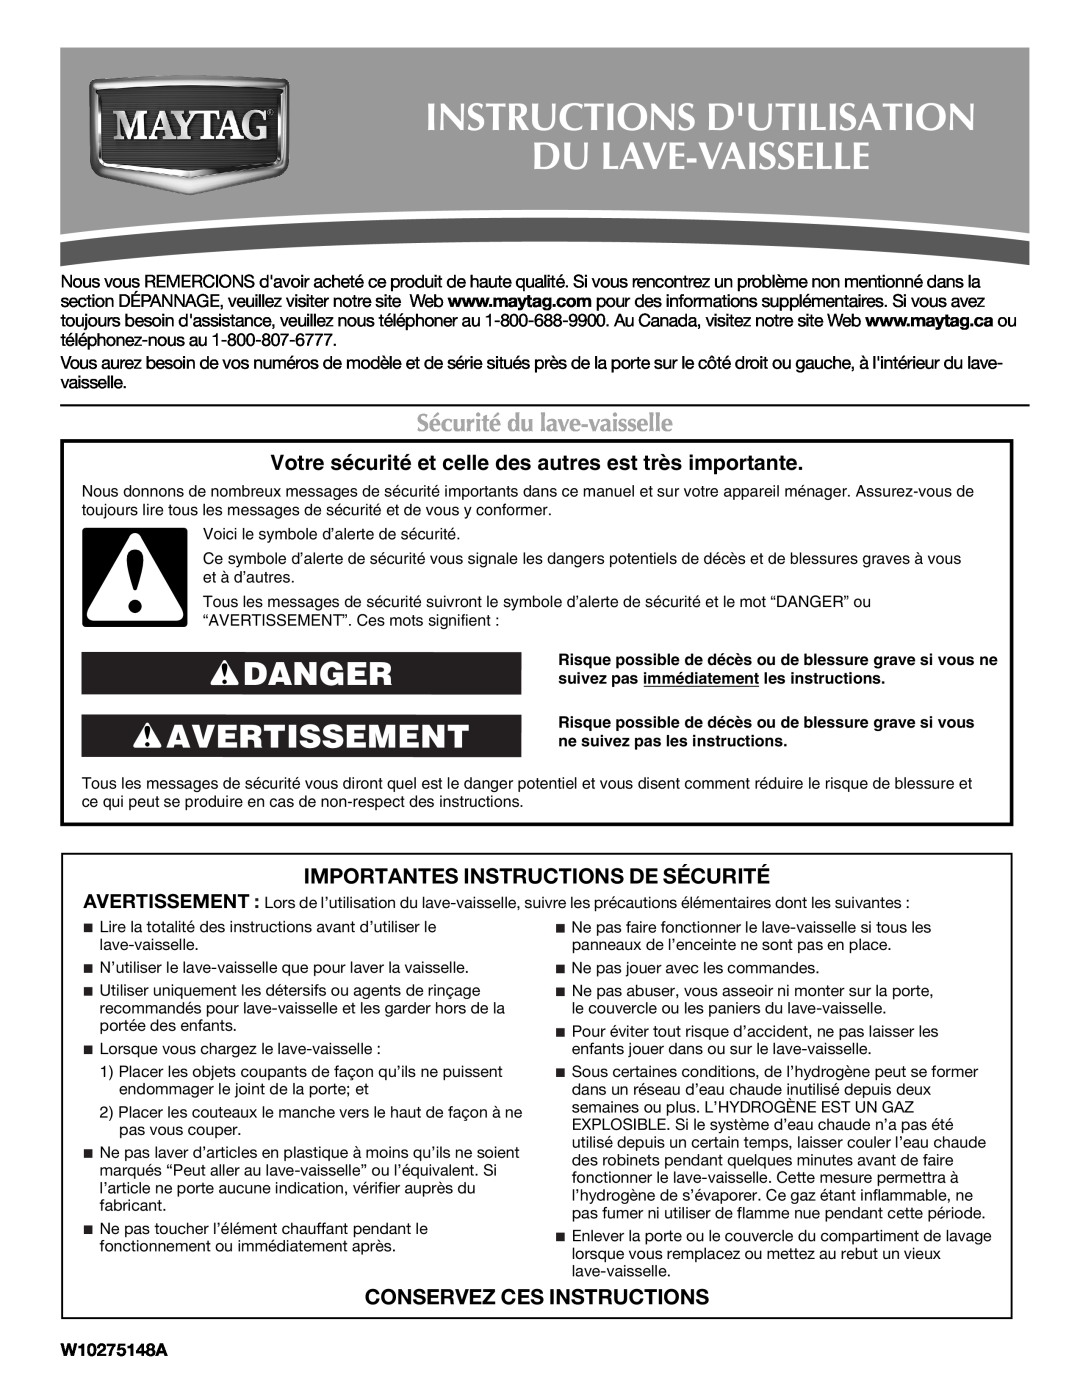 Maytag W10275148A Instructions Dutilisation Du Lave-Vaisselle, Danger Avertissement, Sécurité du lave-vaisselle 